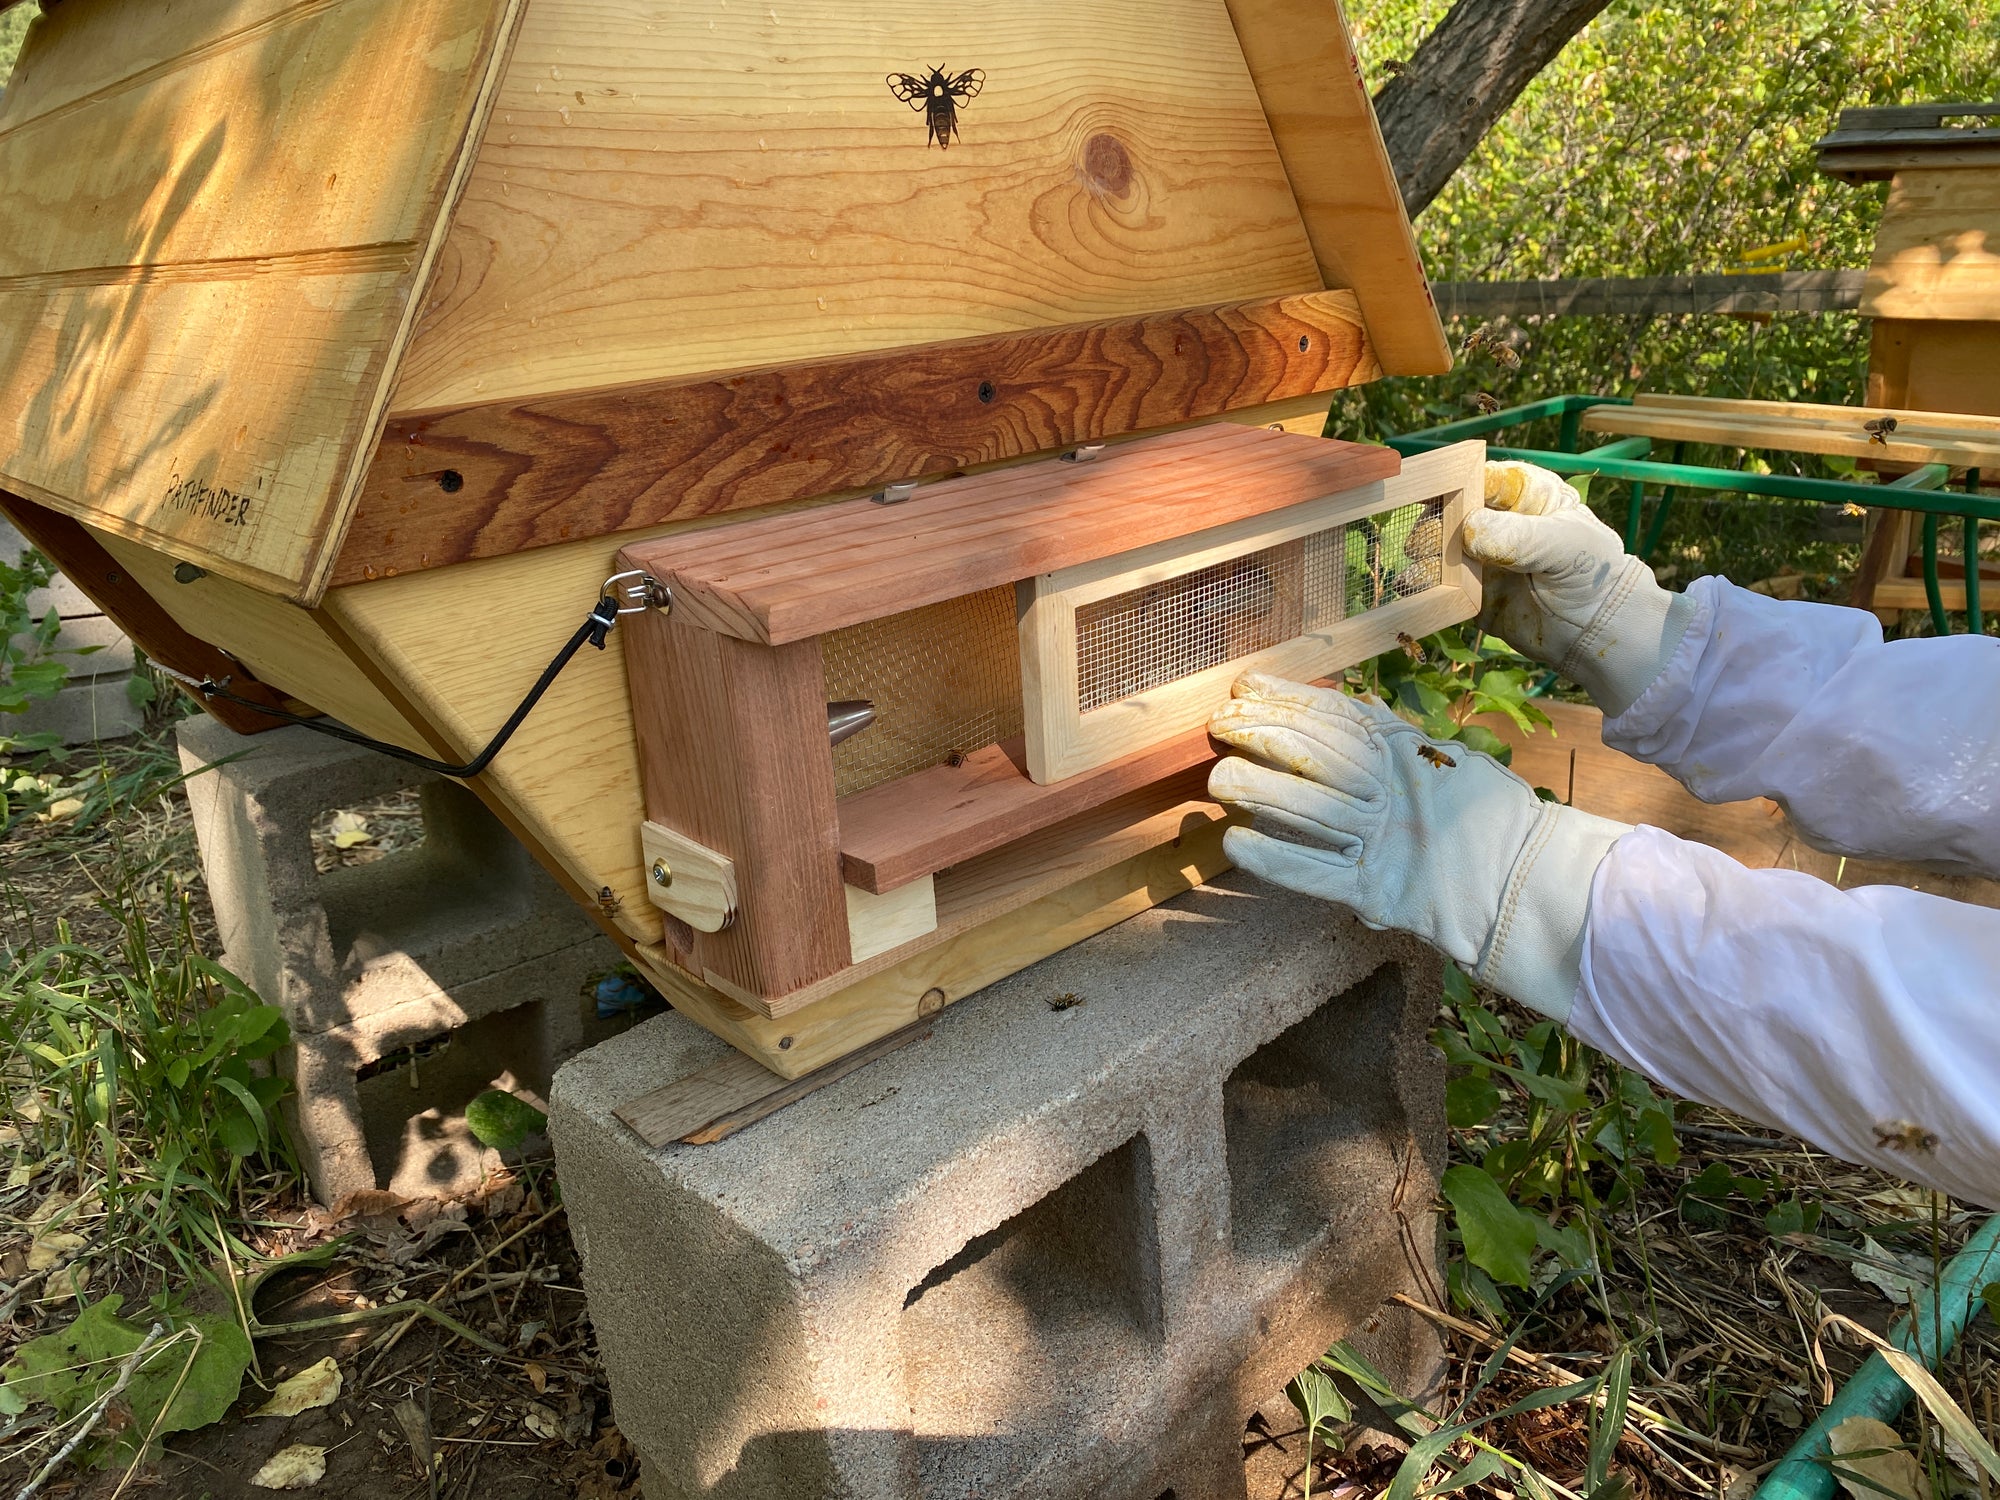 Bees Robbing a Hive